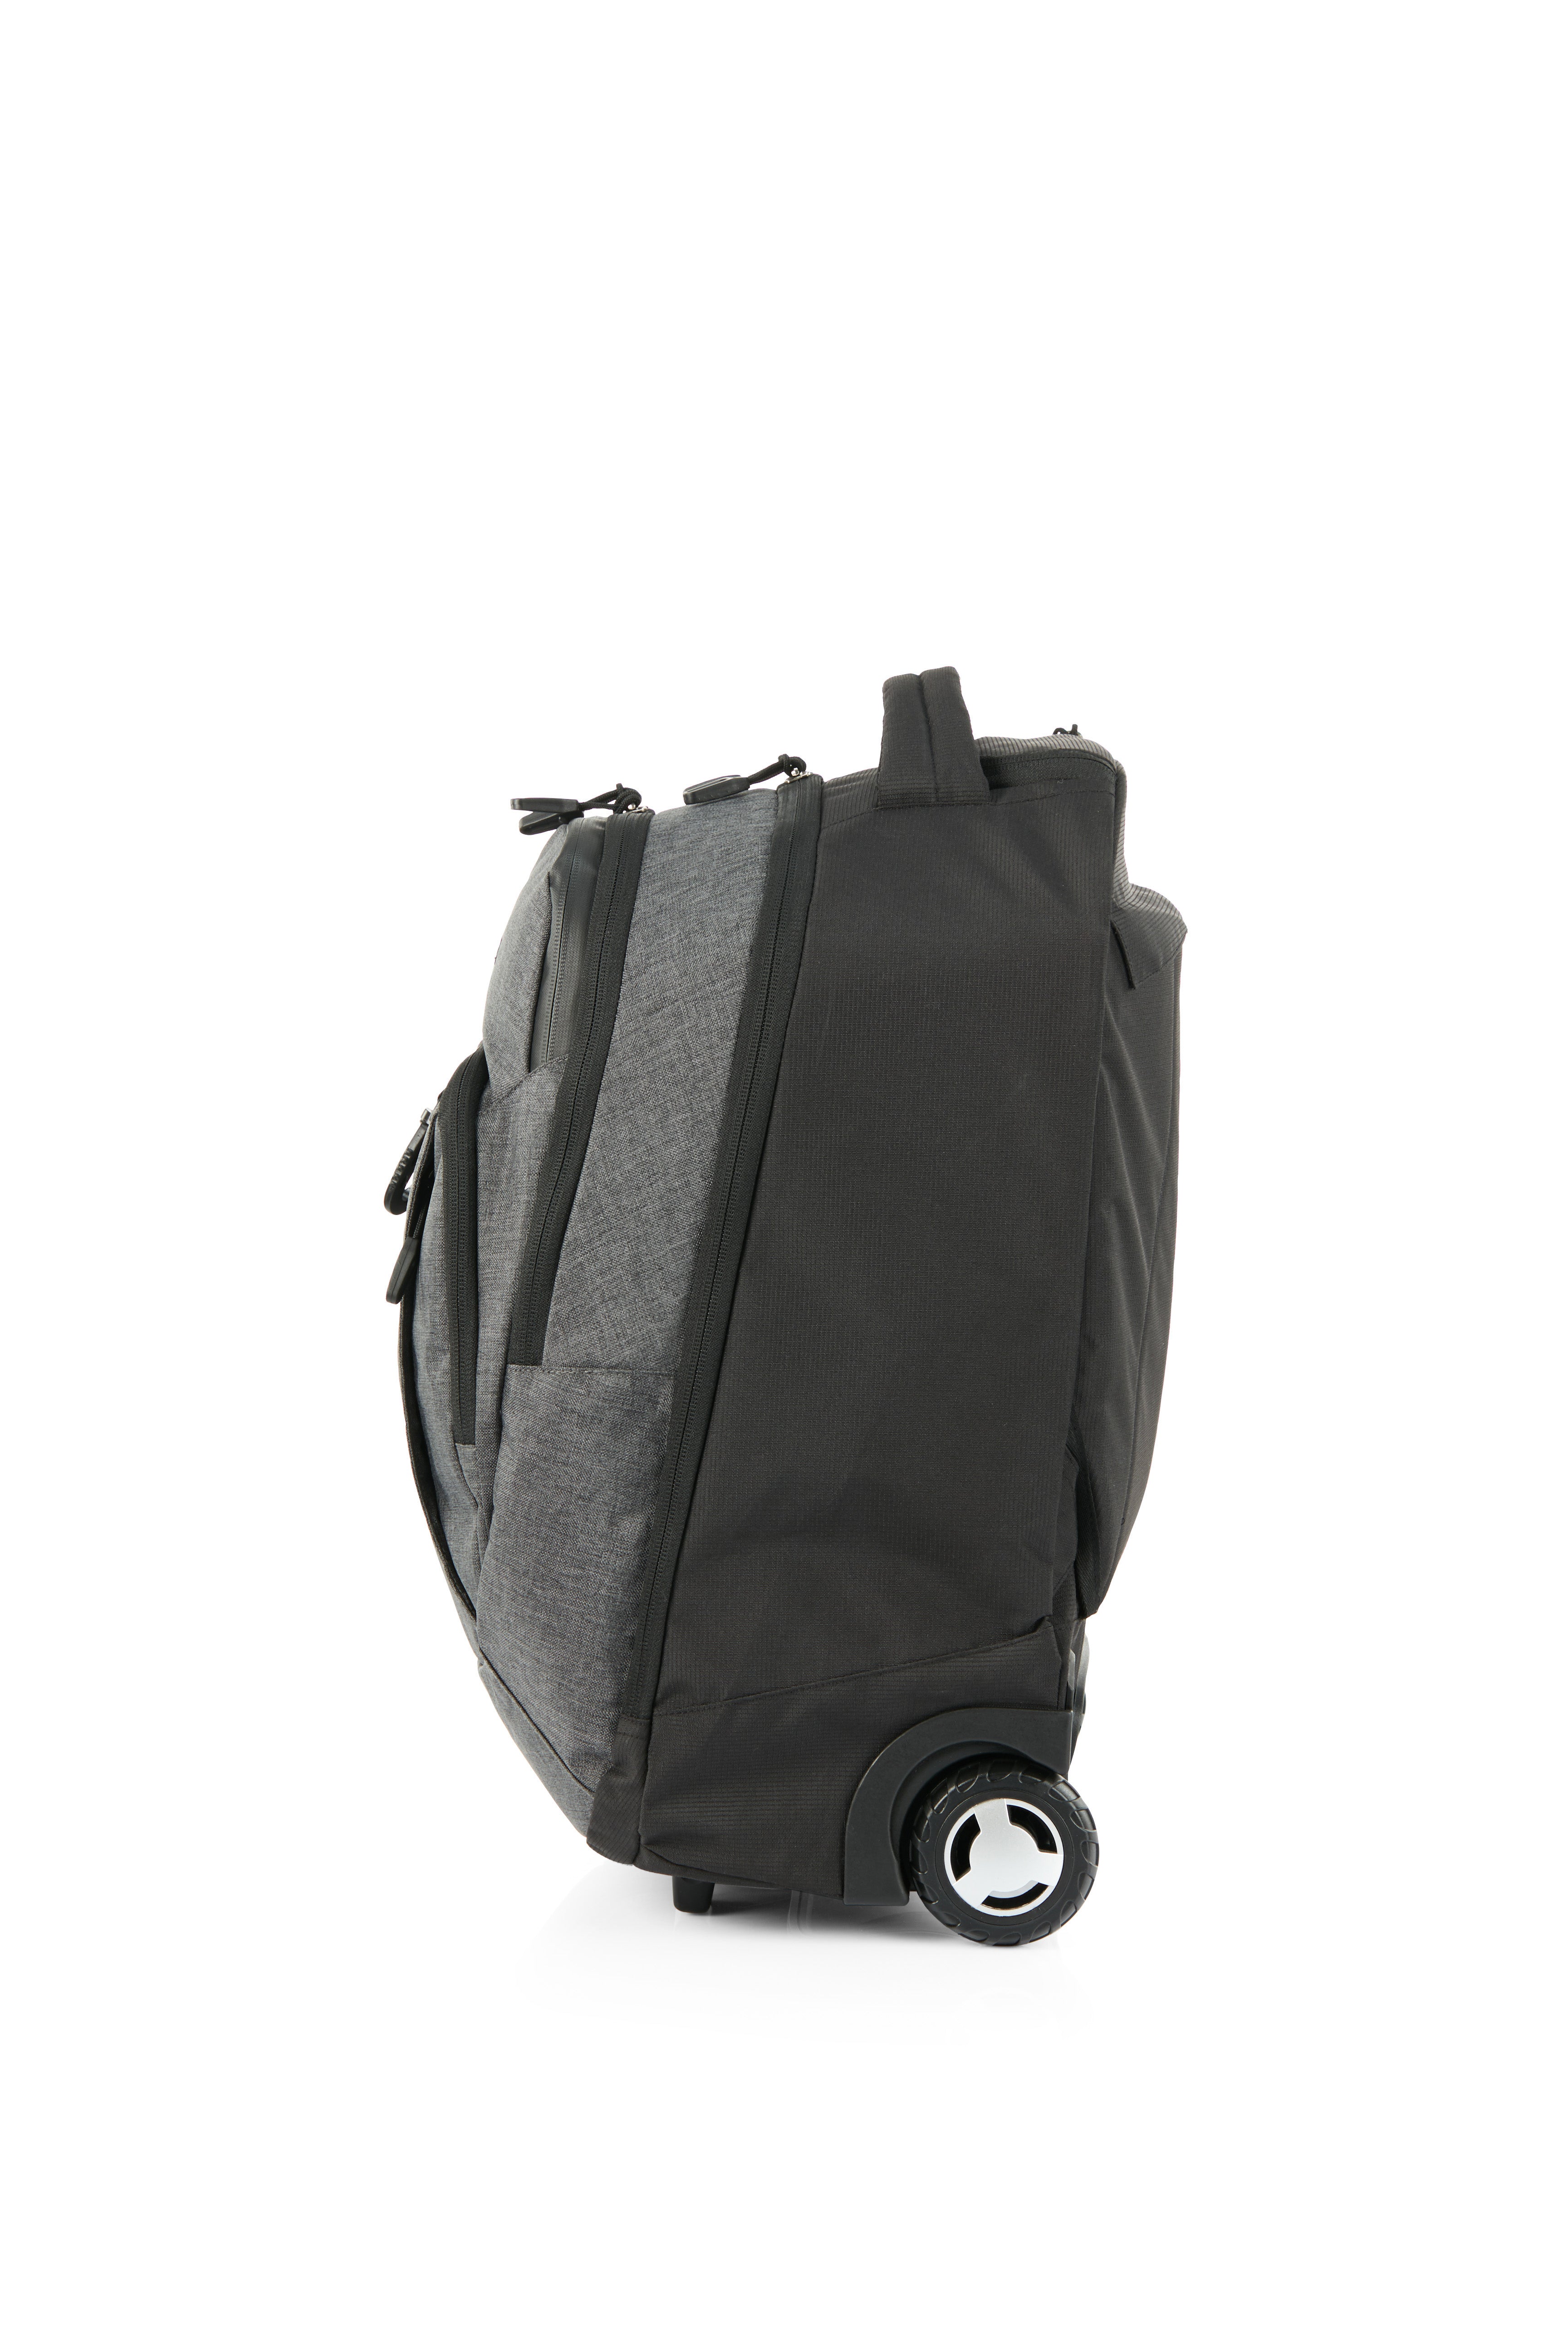 High Sierra - Jarvis Pro backpack on wheels - Black-4